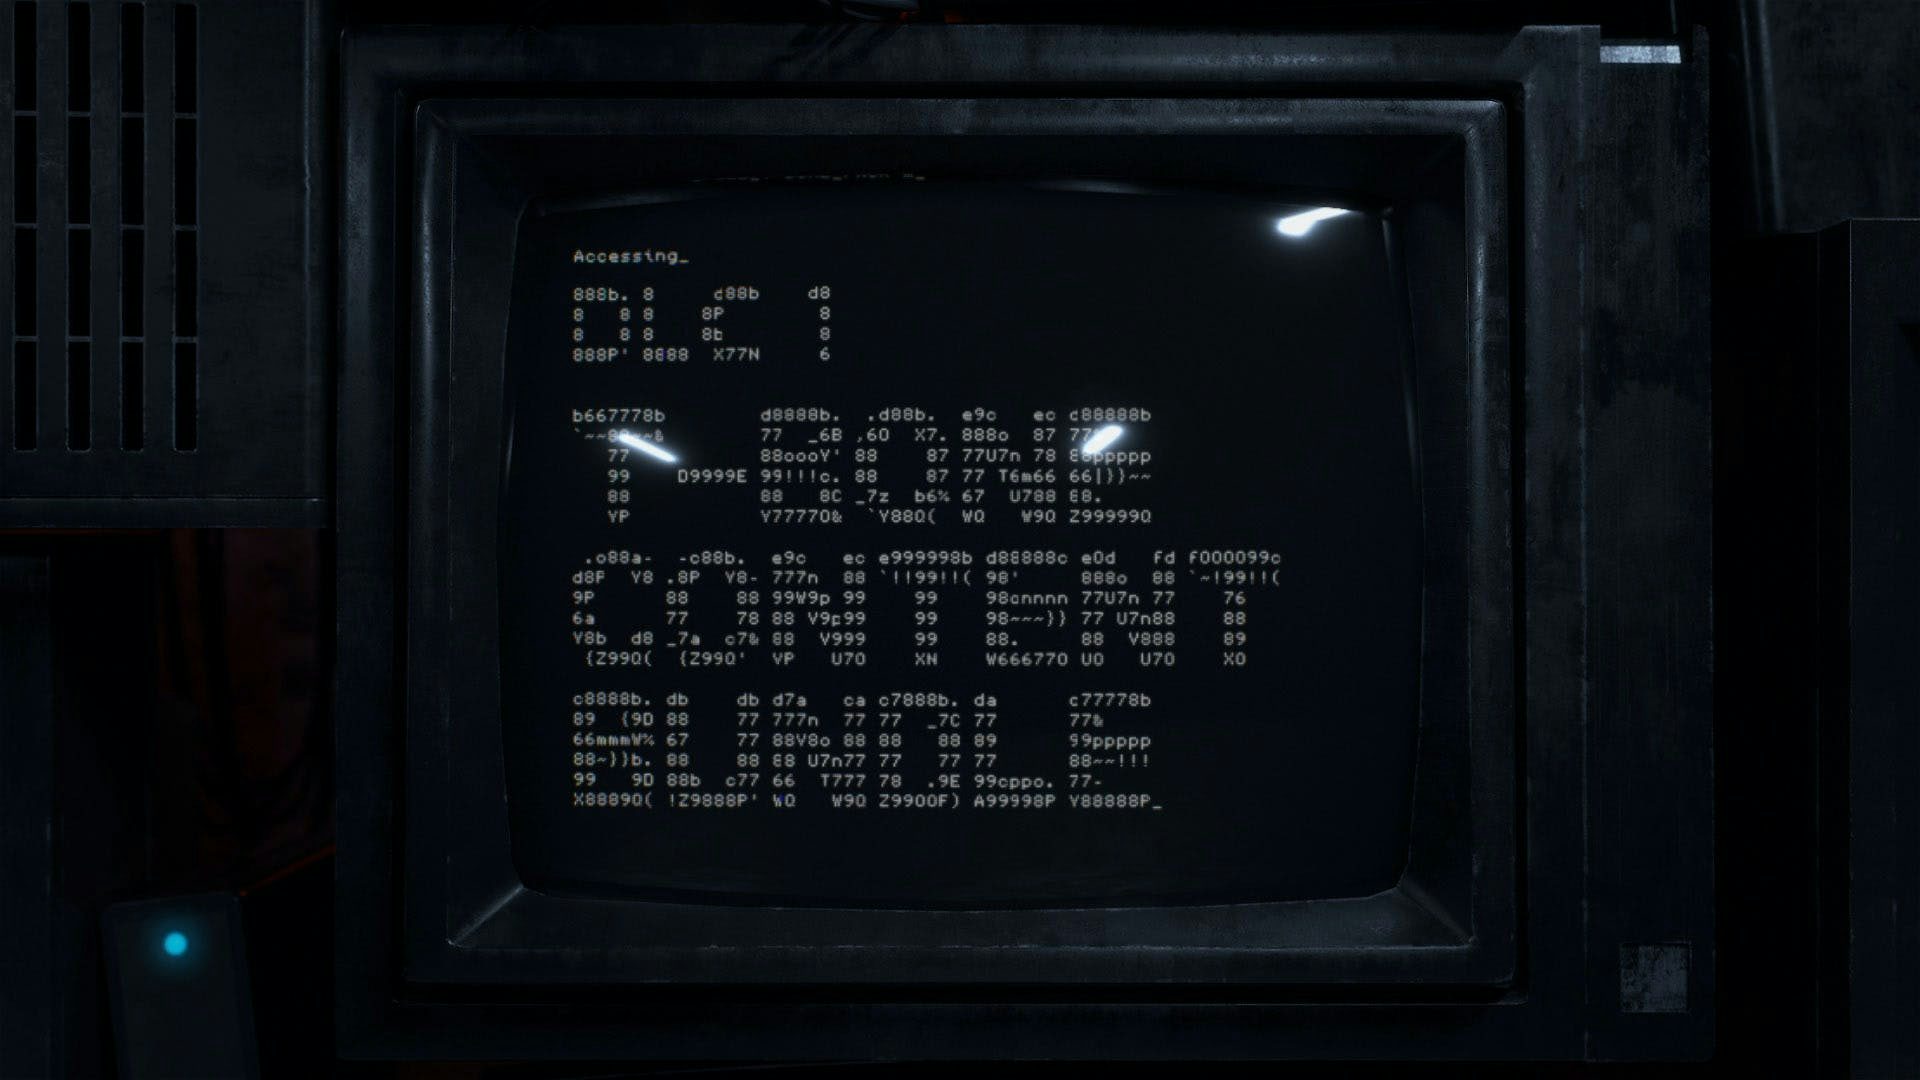 dator med T-bone-innehållspaket för Watch Dogs 2